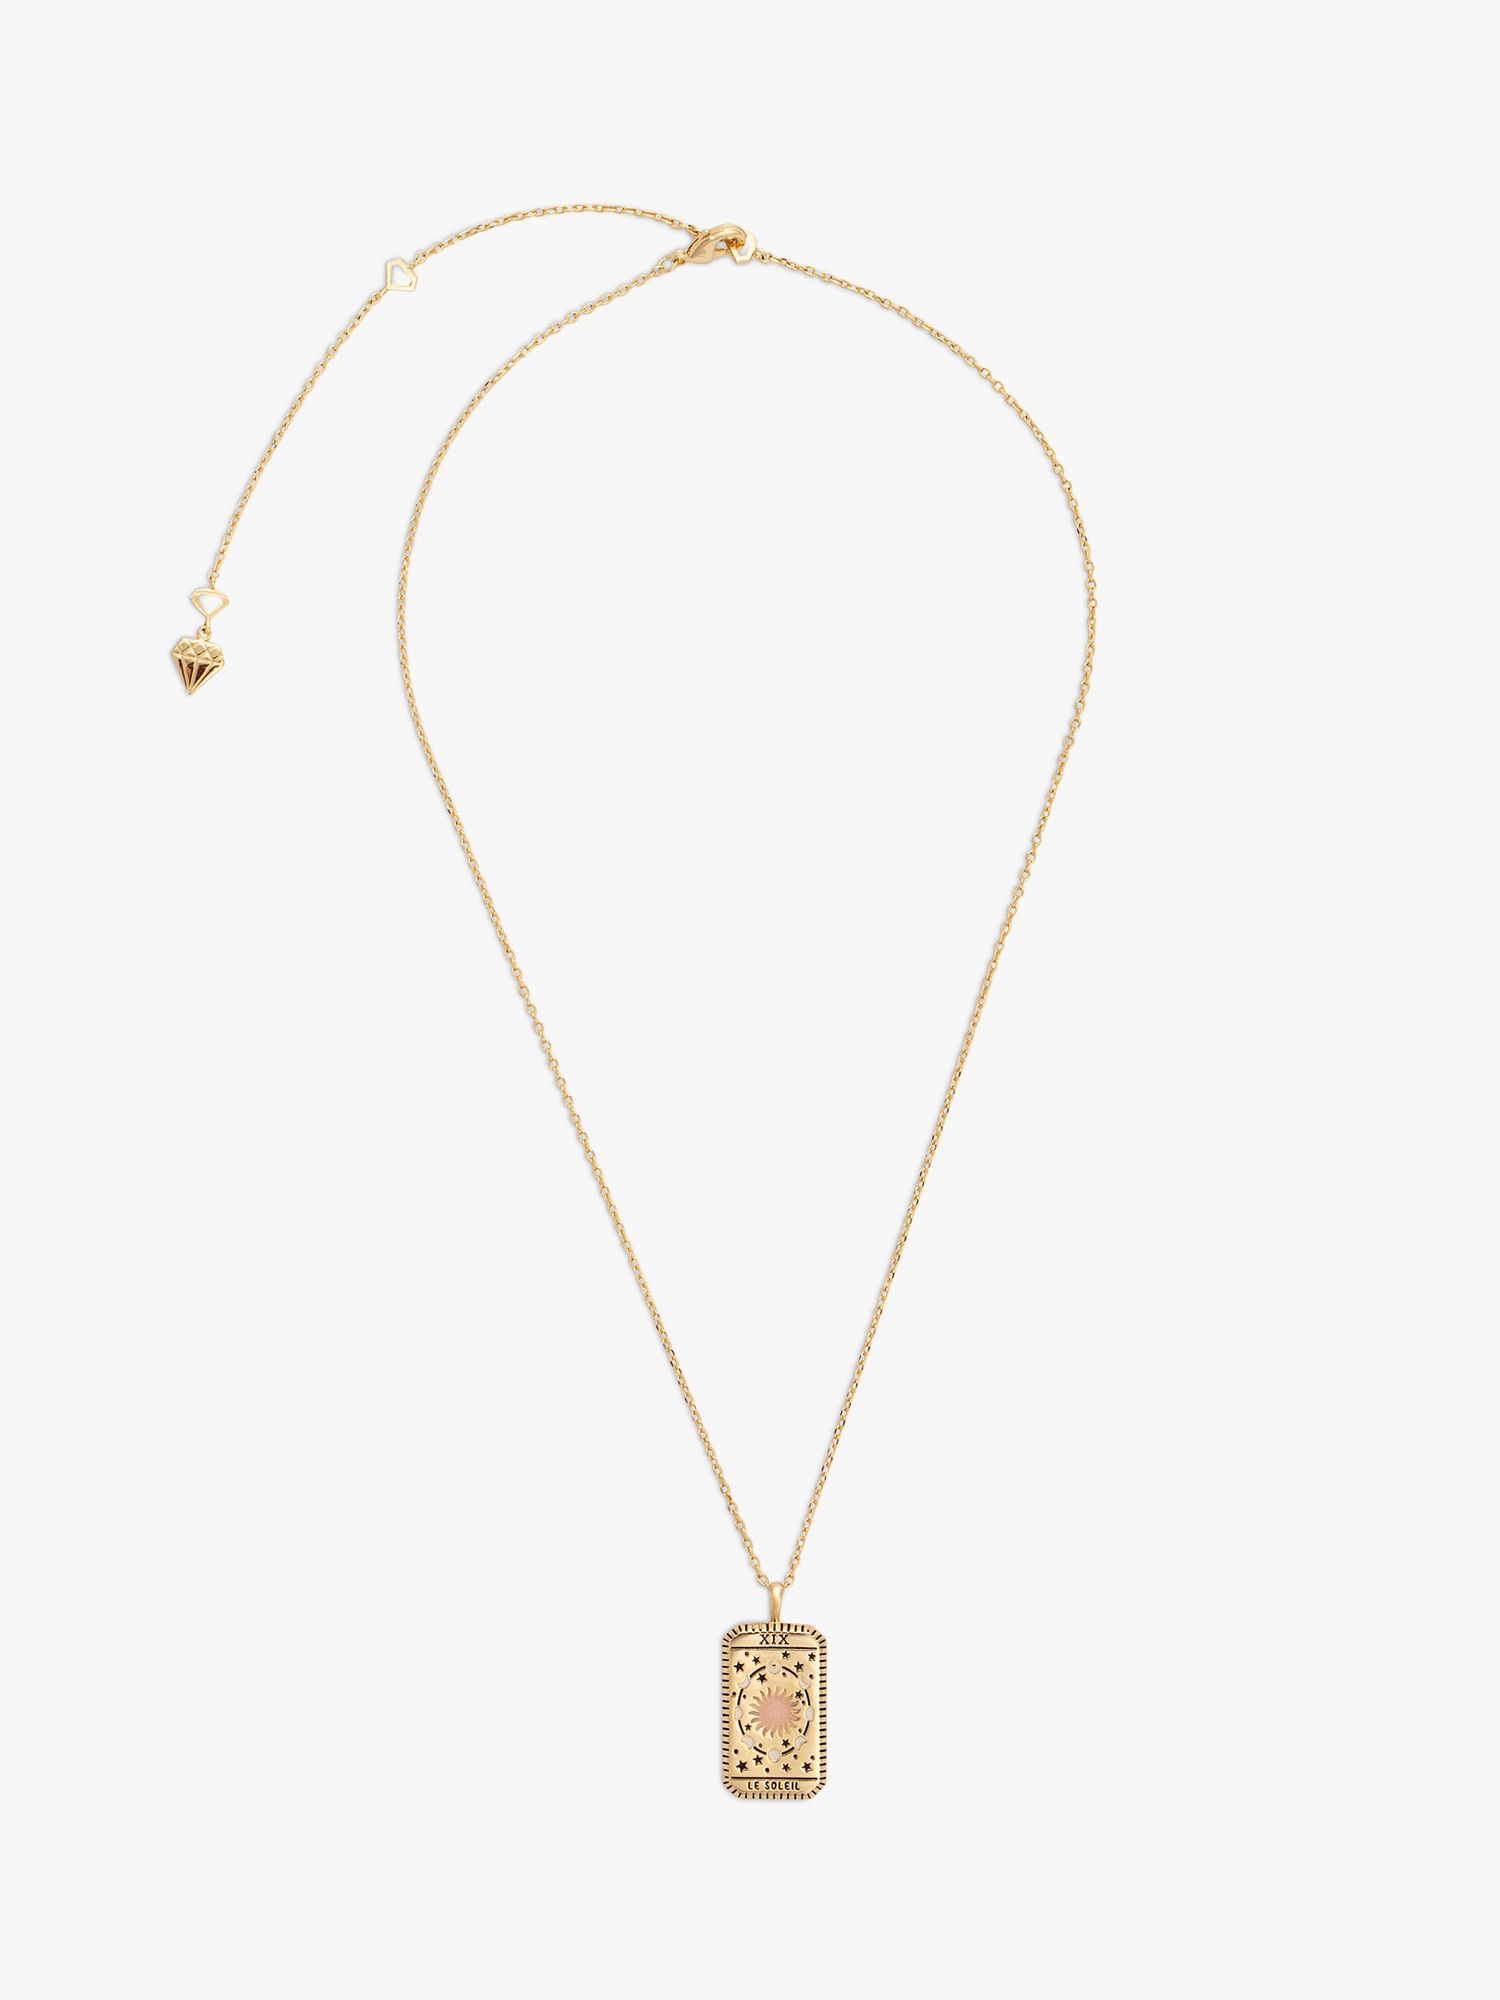 Wanderlust + Co Le Soleil Pendant Necklace, Gold at John Lewis & Partners